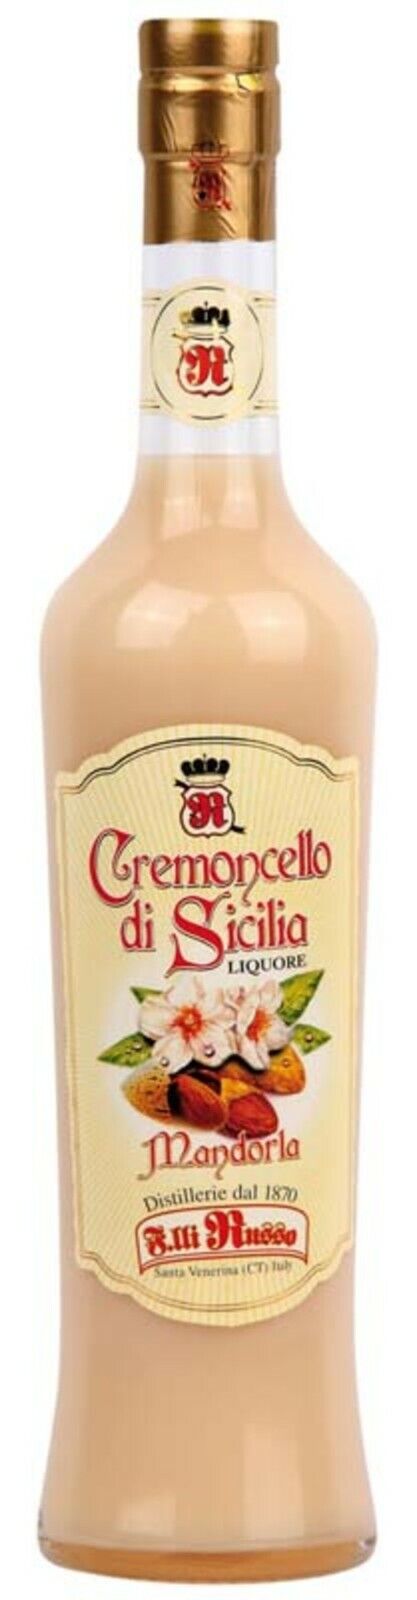 Cremoncello Mandorla liquore Russo Siciliano/500 ml